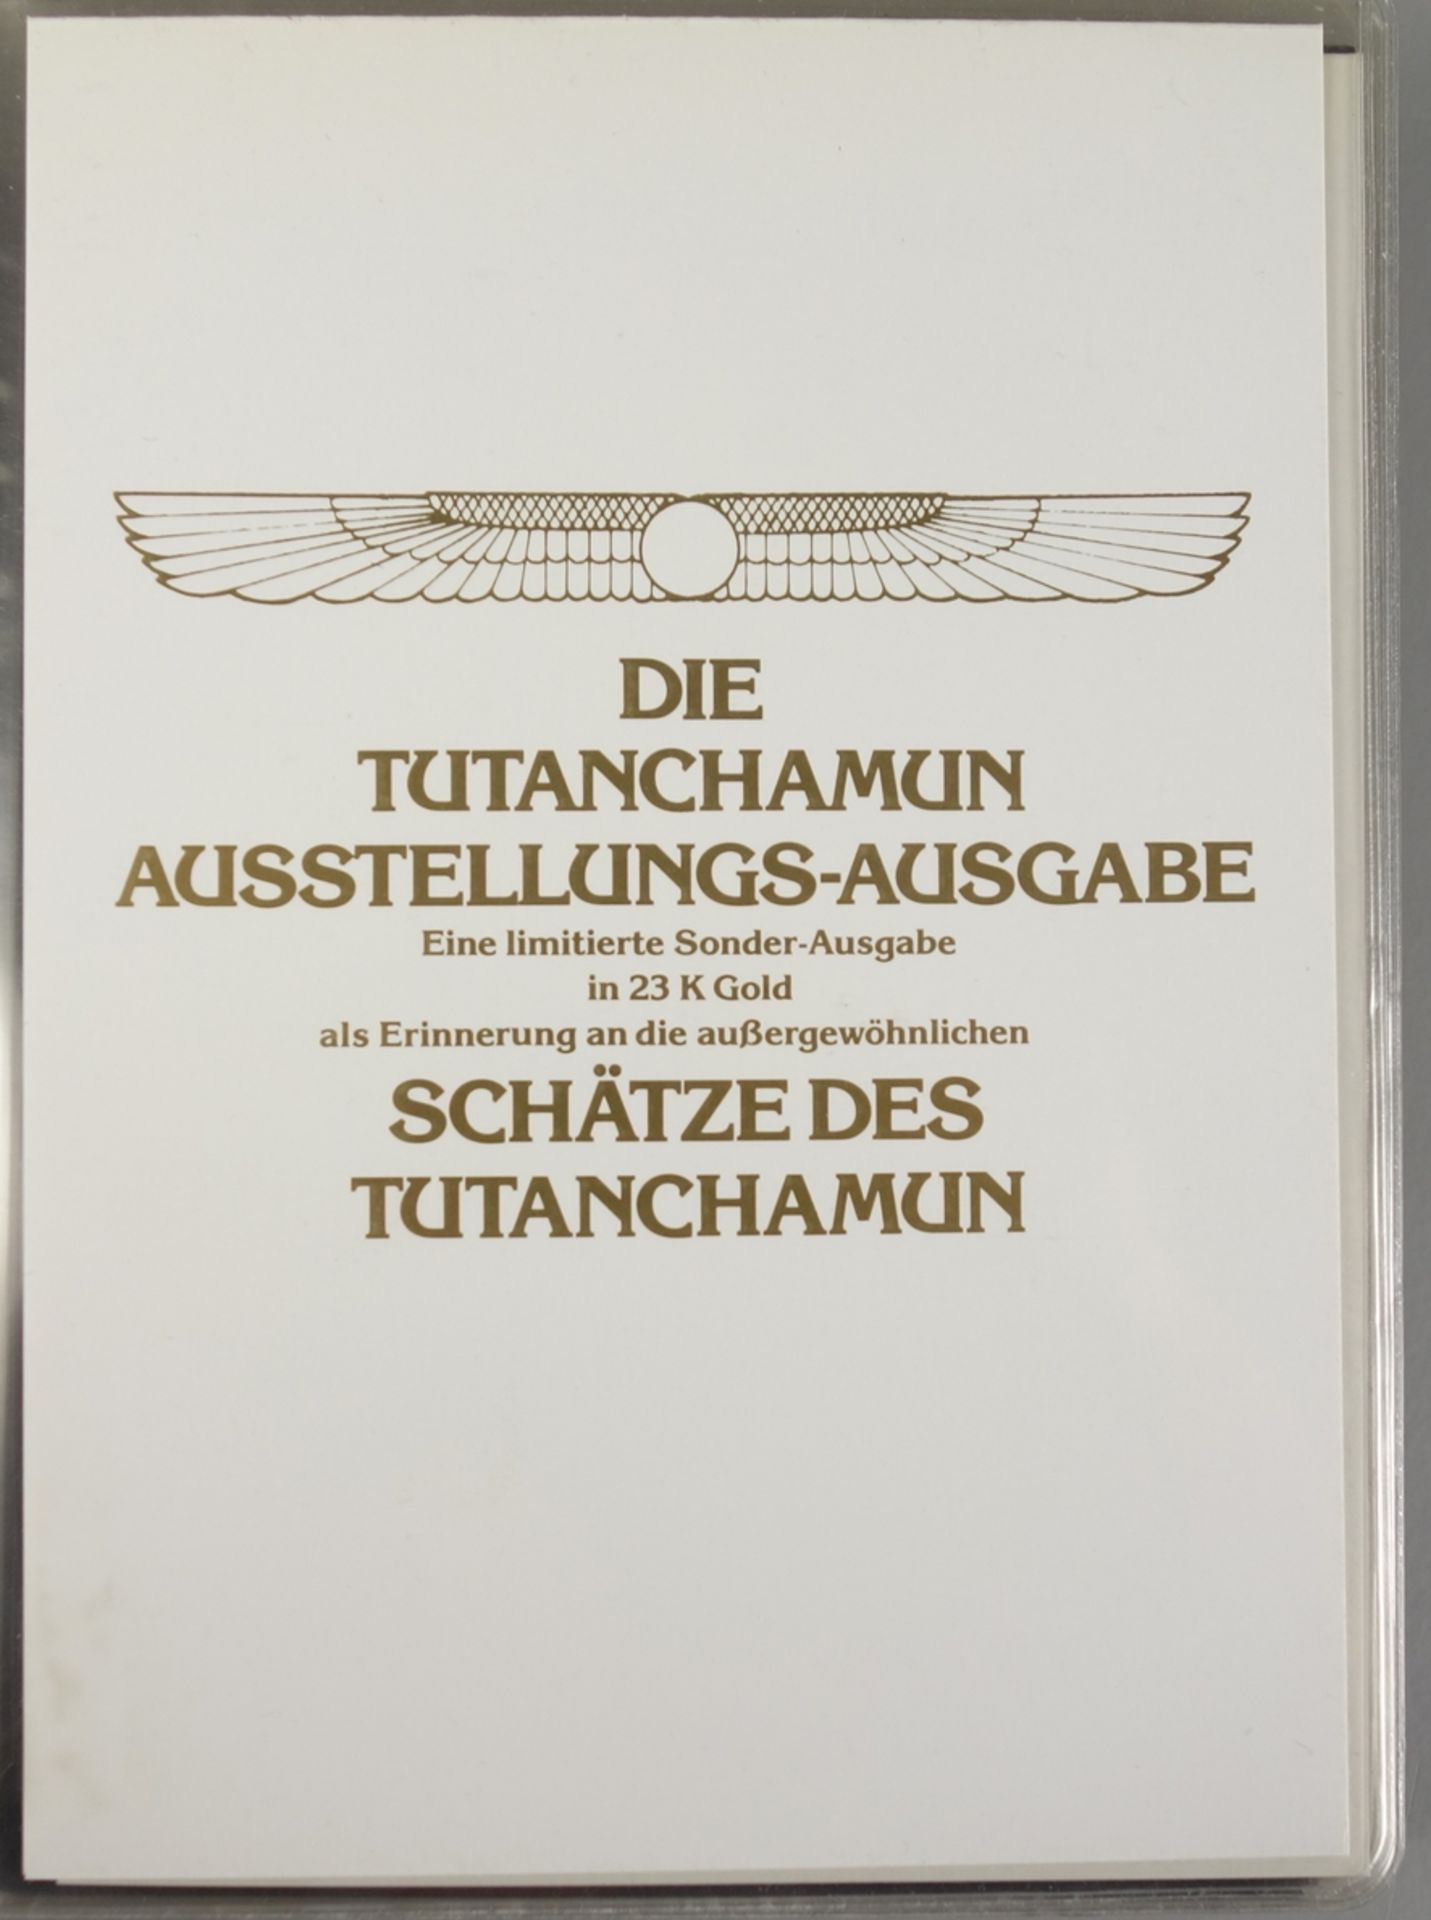 Die Tutanchamun Ausstellungs-Ausgabe mit 38 Briefmarken in 23K Gold